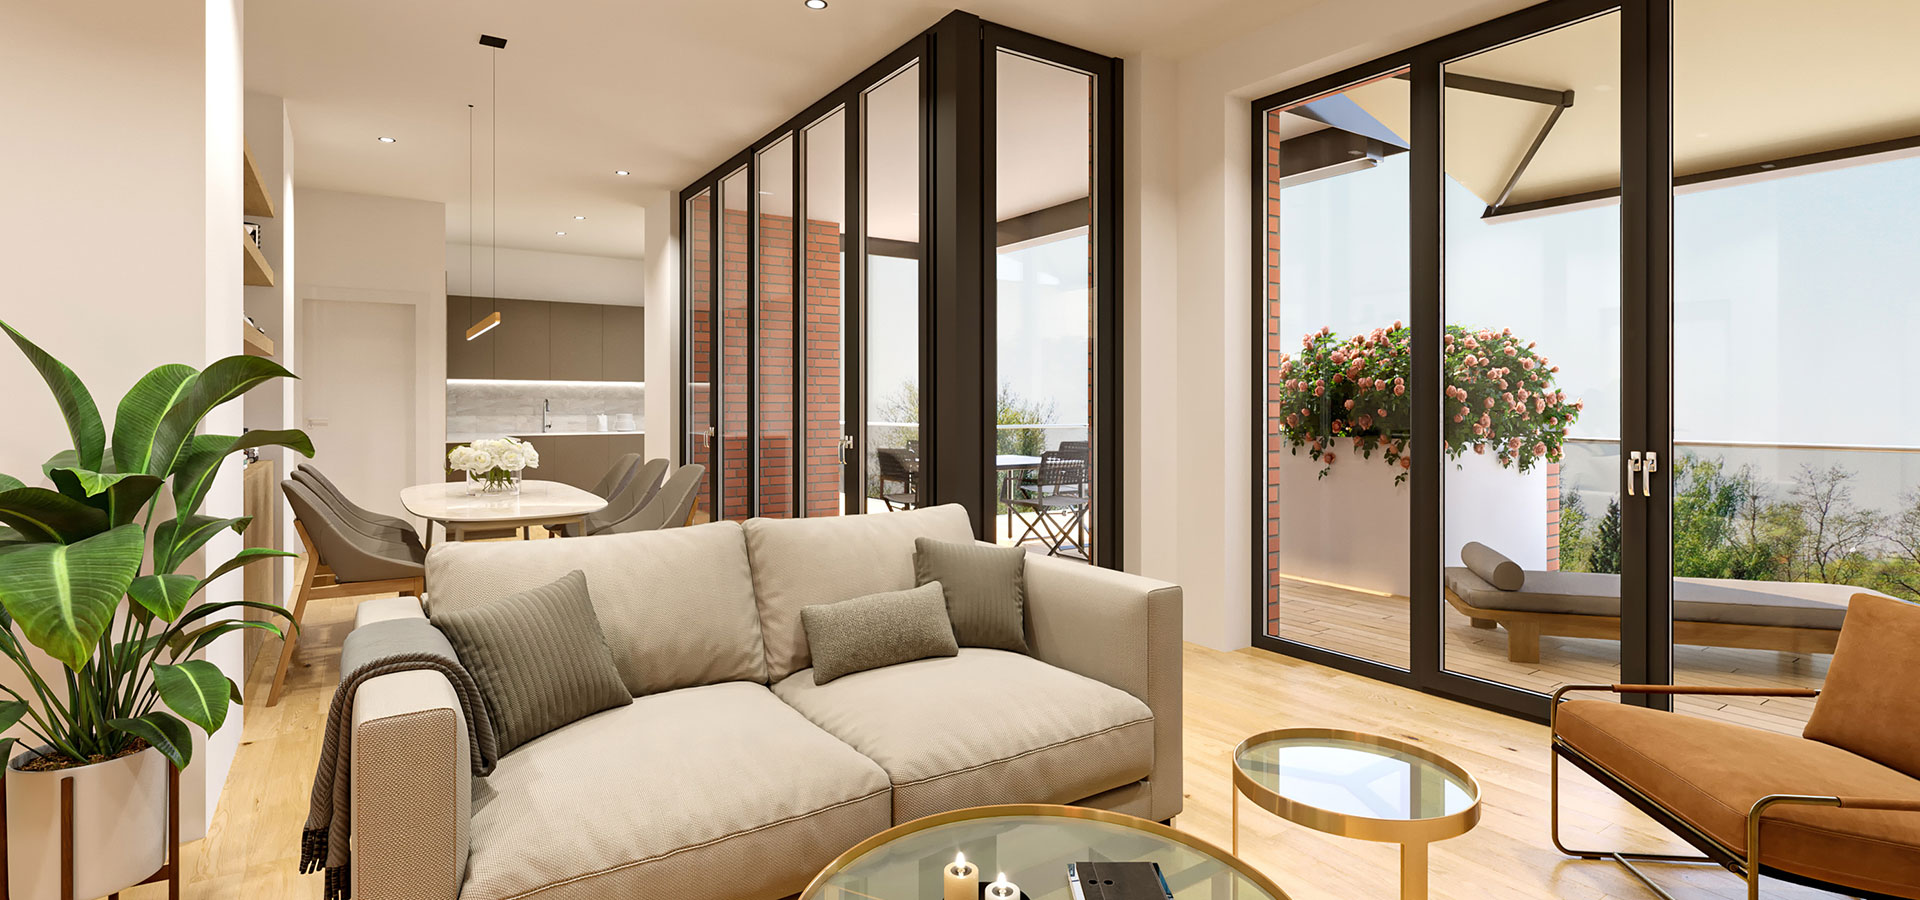 CASA SOLARE | Visualisierung Wohnbereich mit hochwertigen Möbeln und Blick auf Dachterrasse und ins Grüne